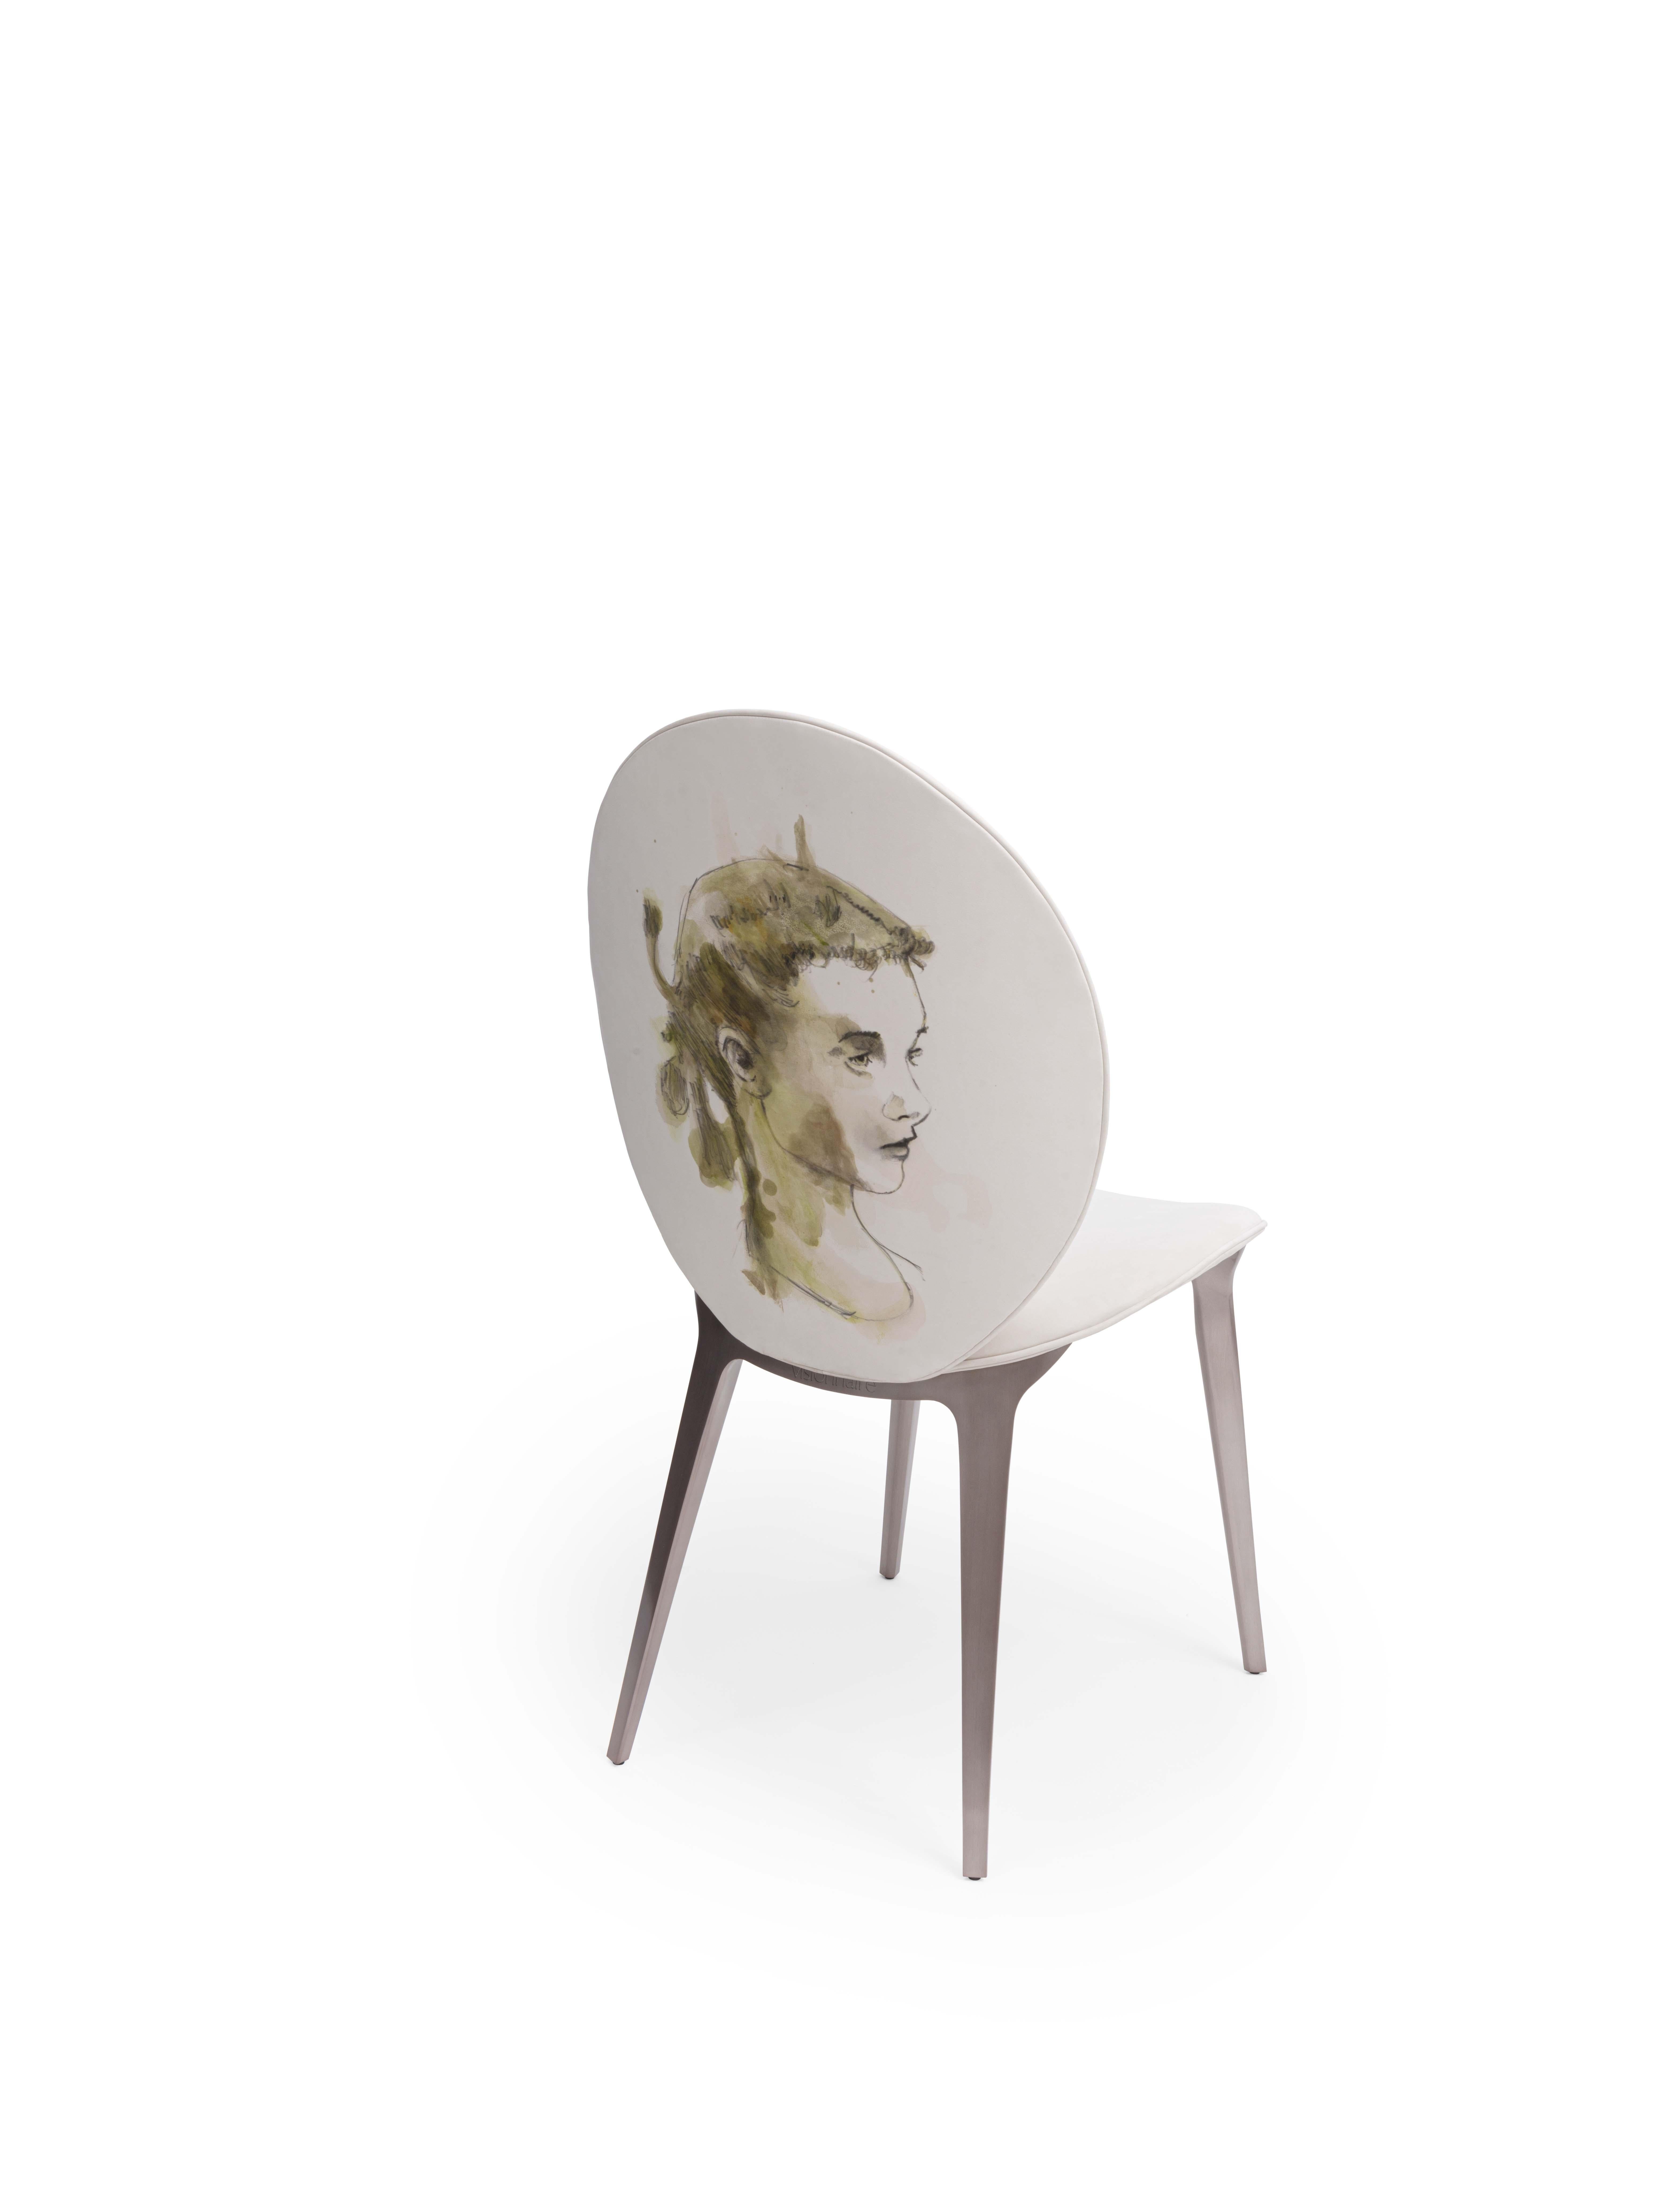 Gepolsterter Stuhl. Polstermöbel aus Nabuk Libeccio Zinco mit Kunstwerken von Domenico Grenci. Beine in satinierter Siena-Lackierung.